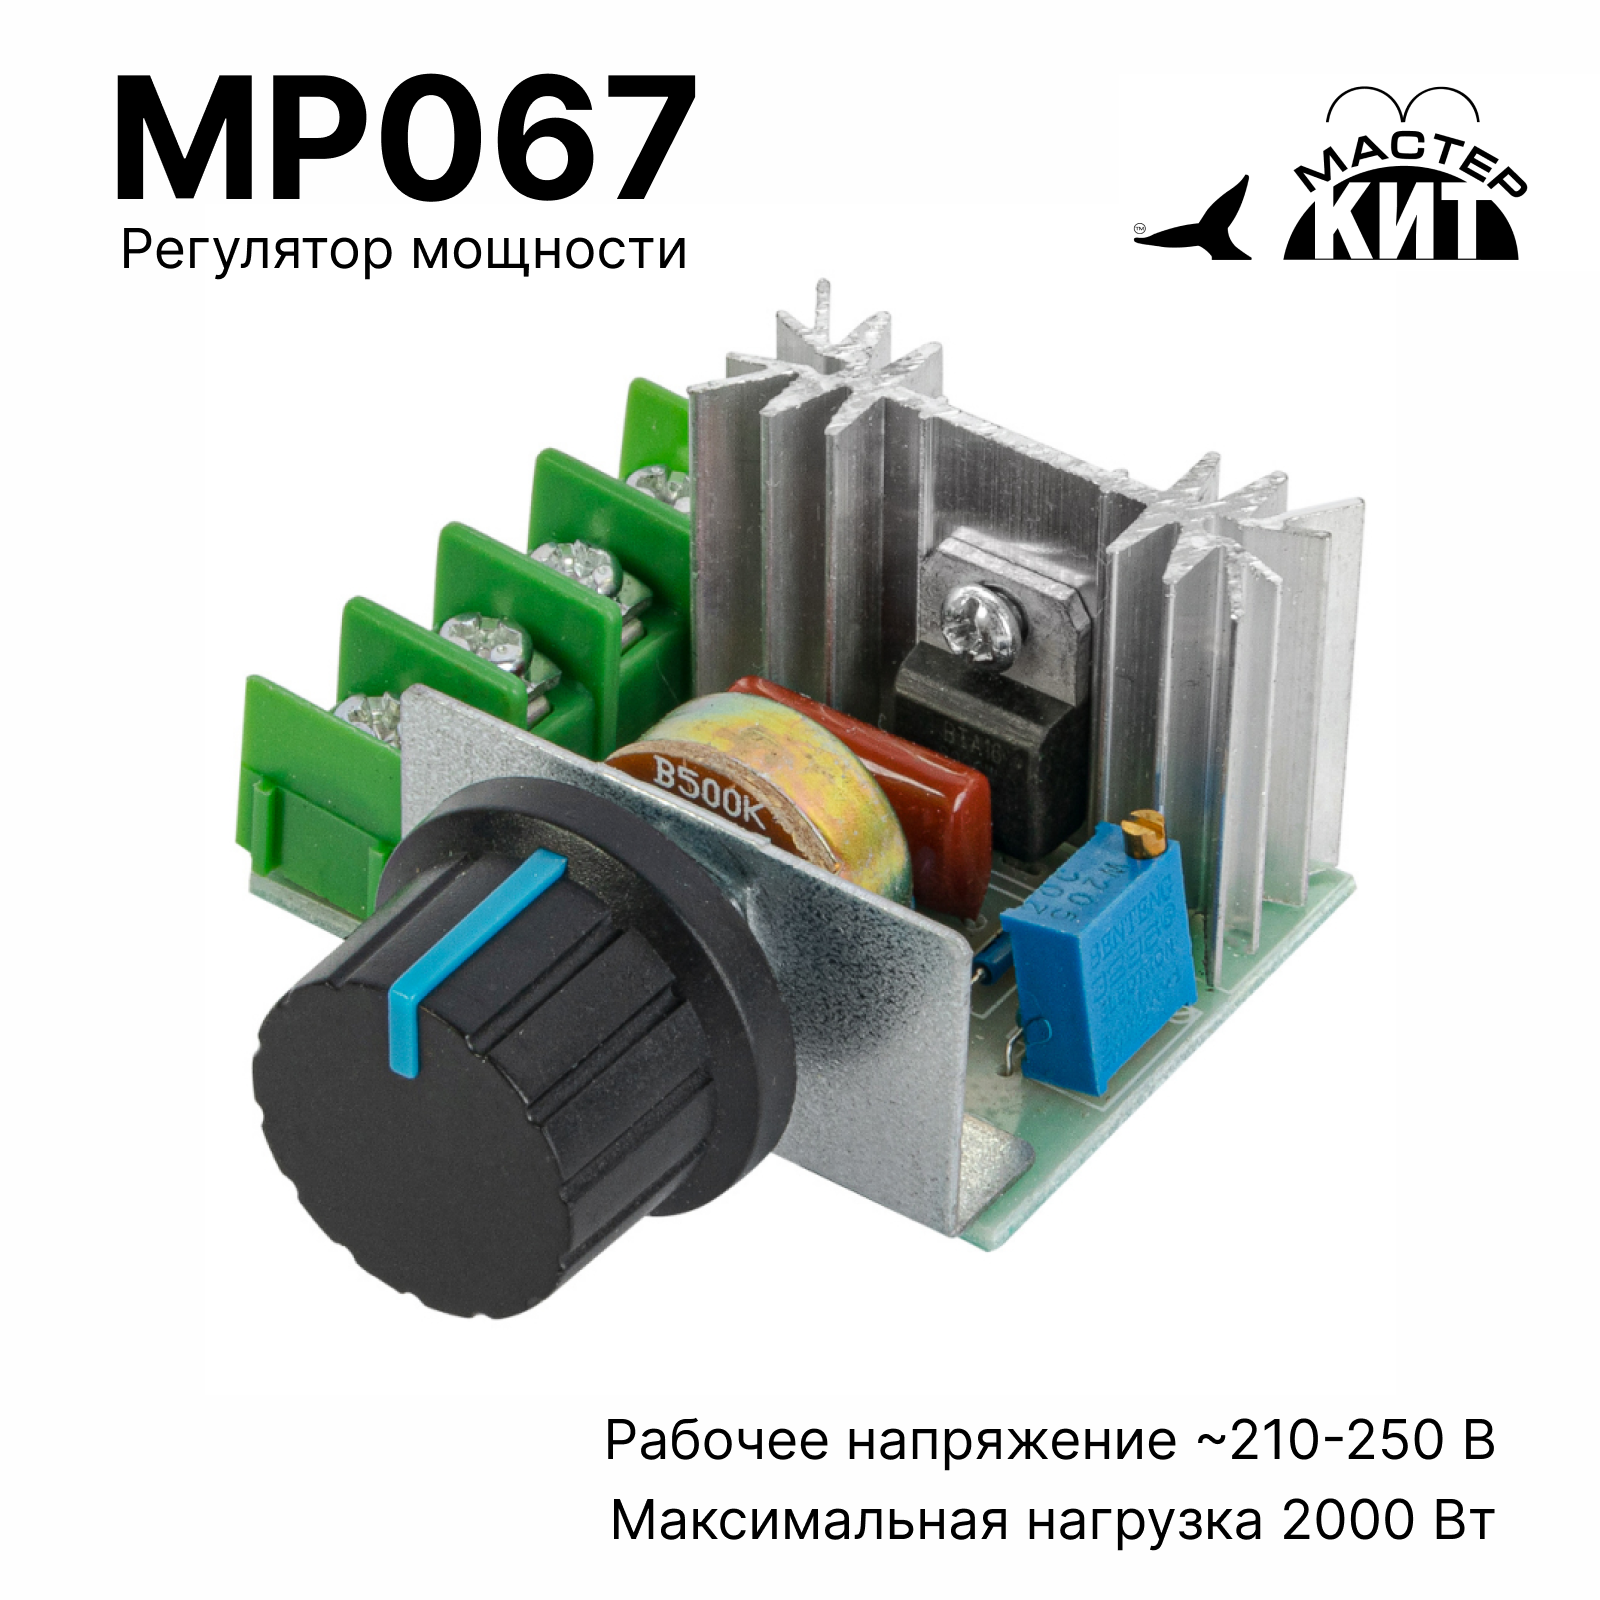 Регулятор мощности Мастер Кит MP067 2 кВт (радиатор, 220В, 9А) регулятор мощности heliosa